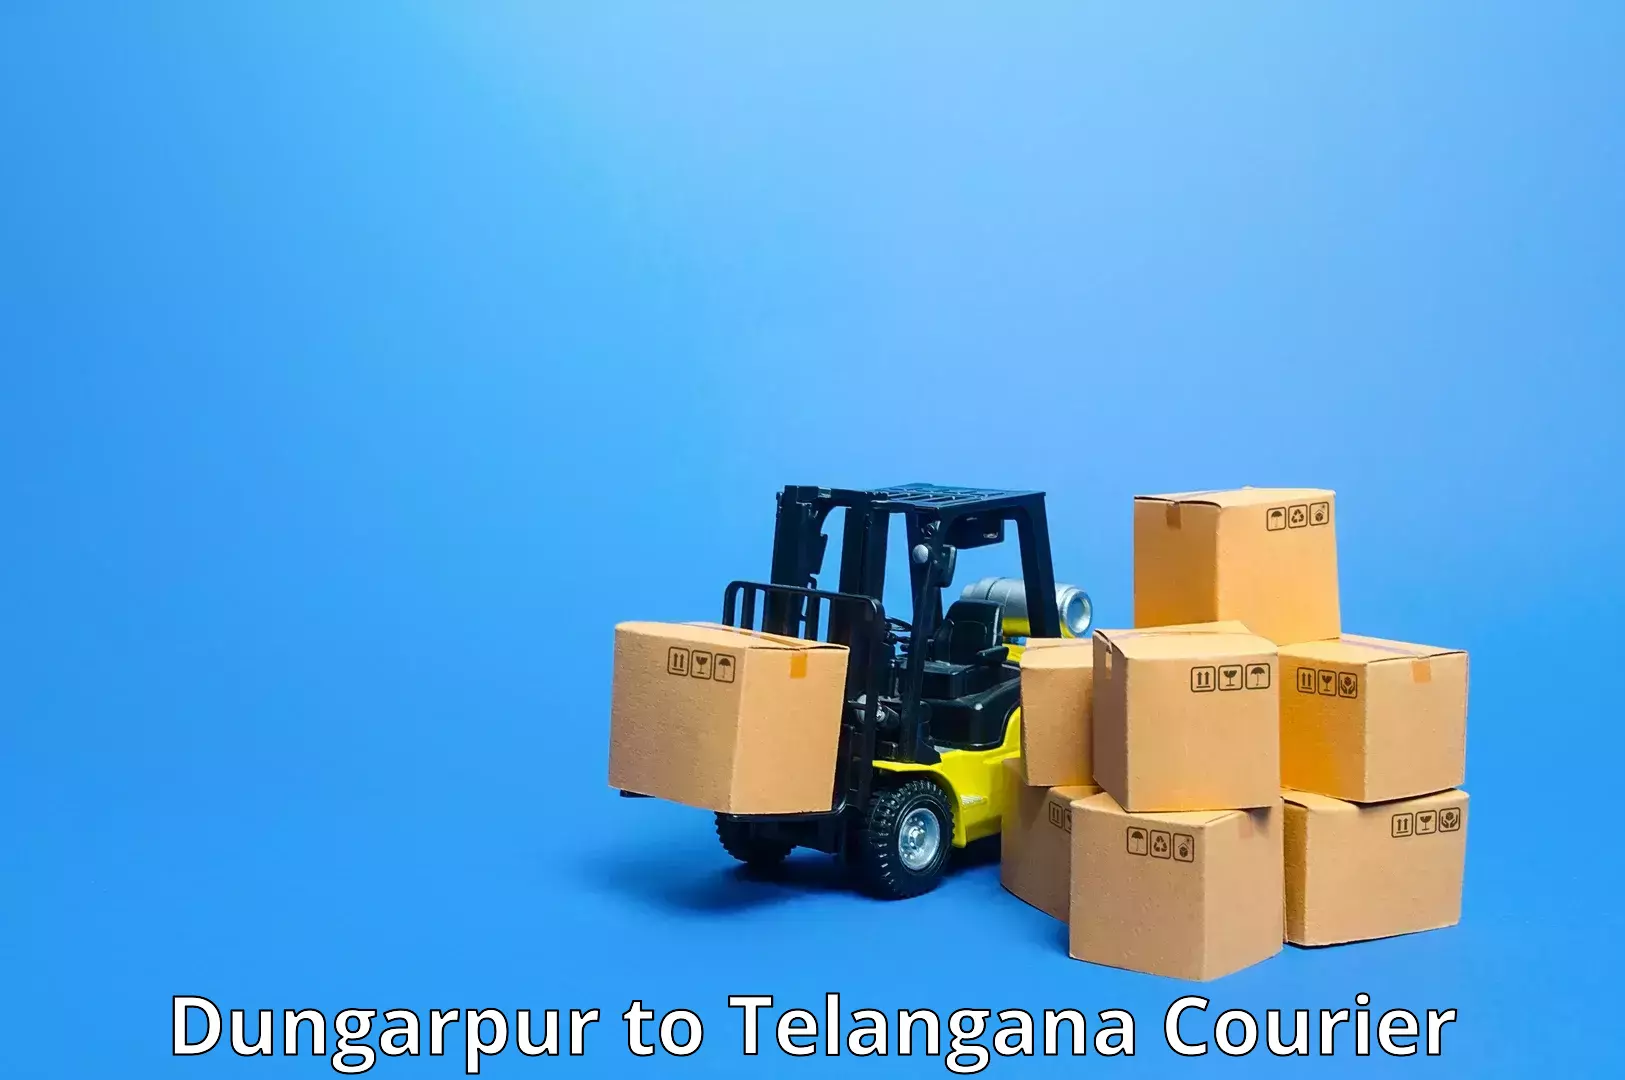 Express mail service Dungarpur to Telangana